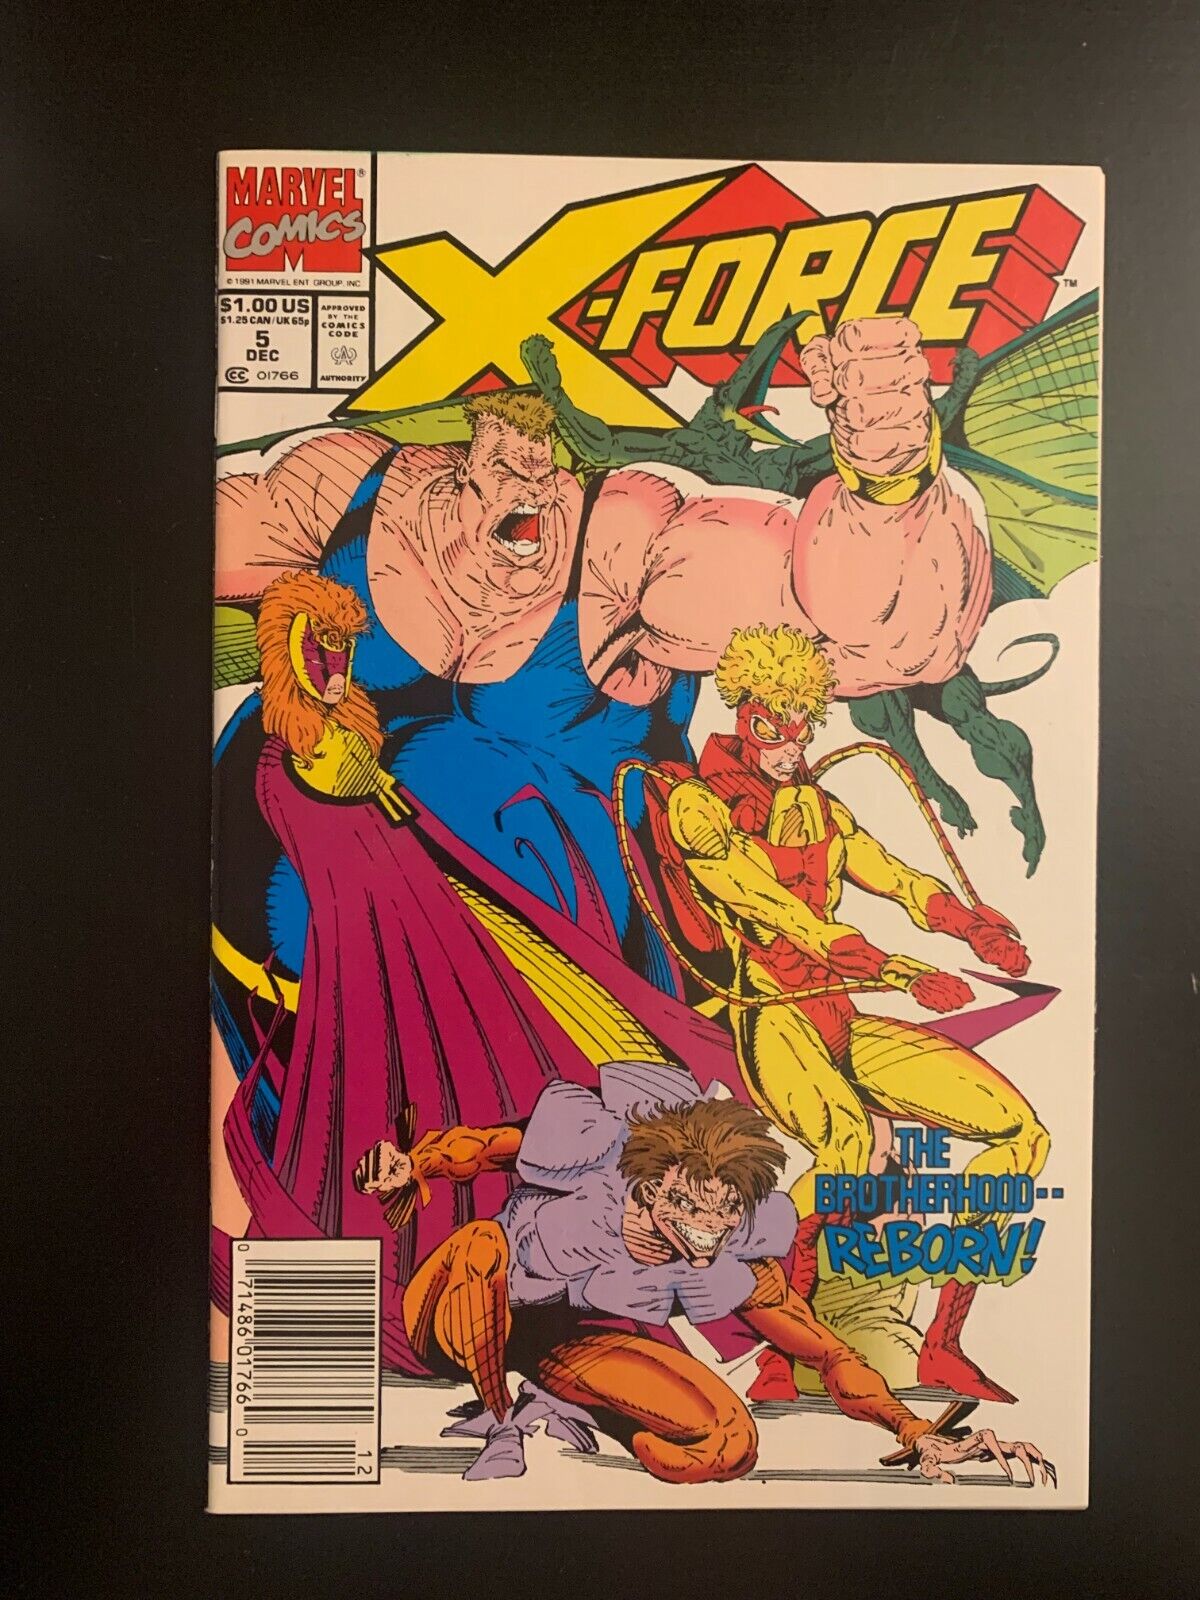 X-Force #5 - Dec 1991 - Vol.1 - Newsstand Edition - Minor Key - (1287)